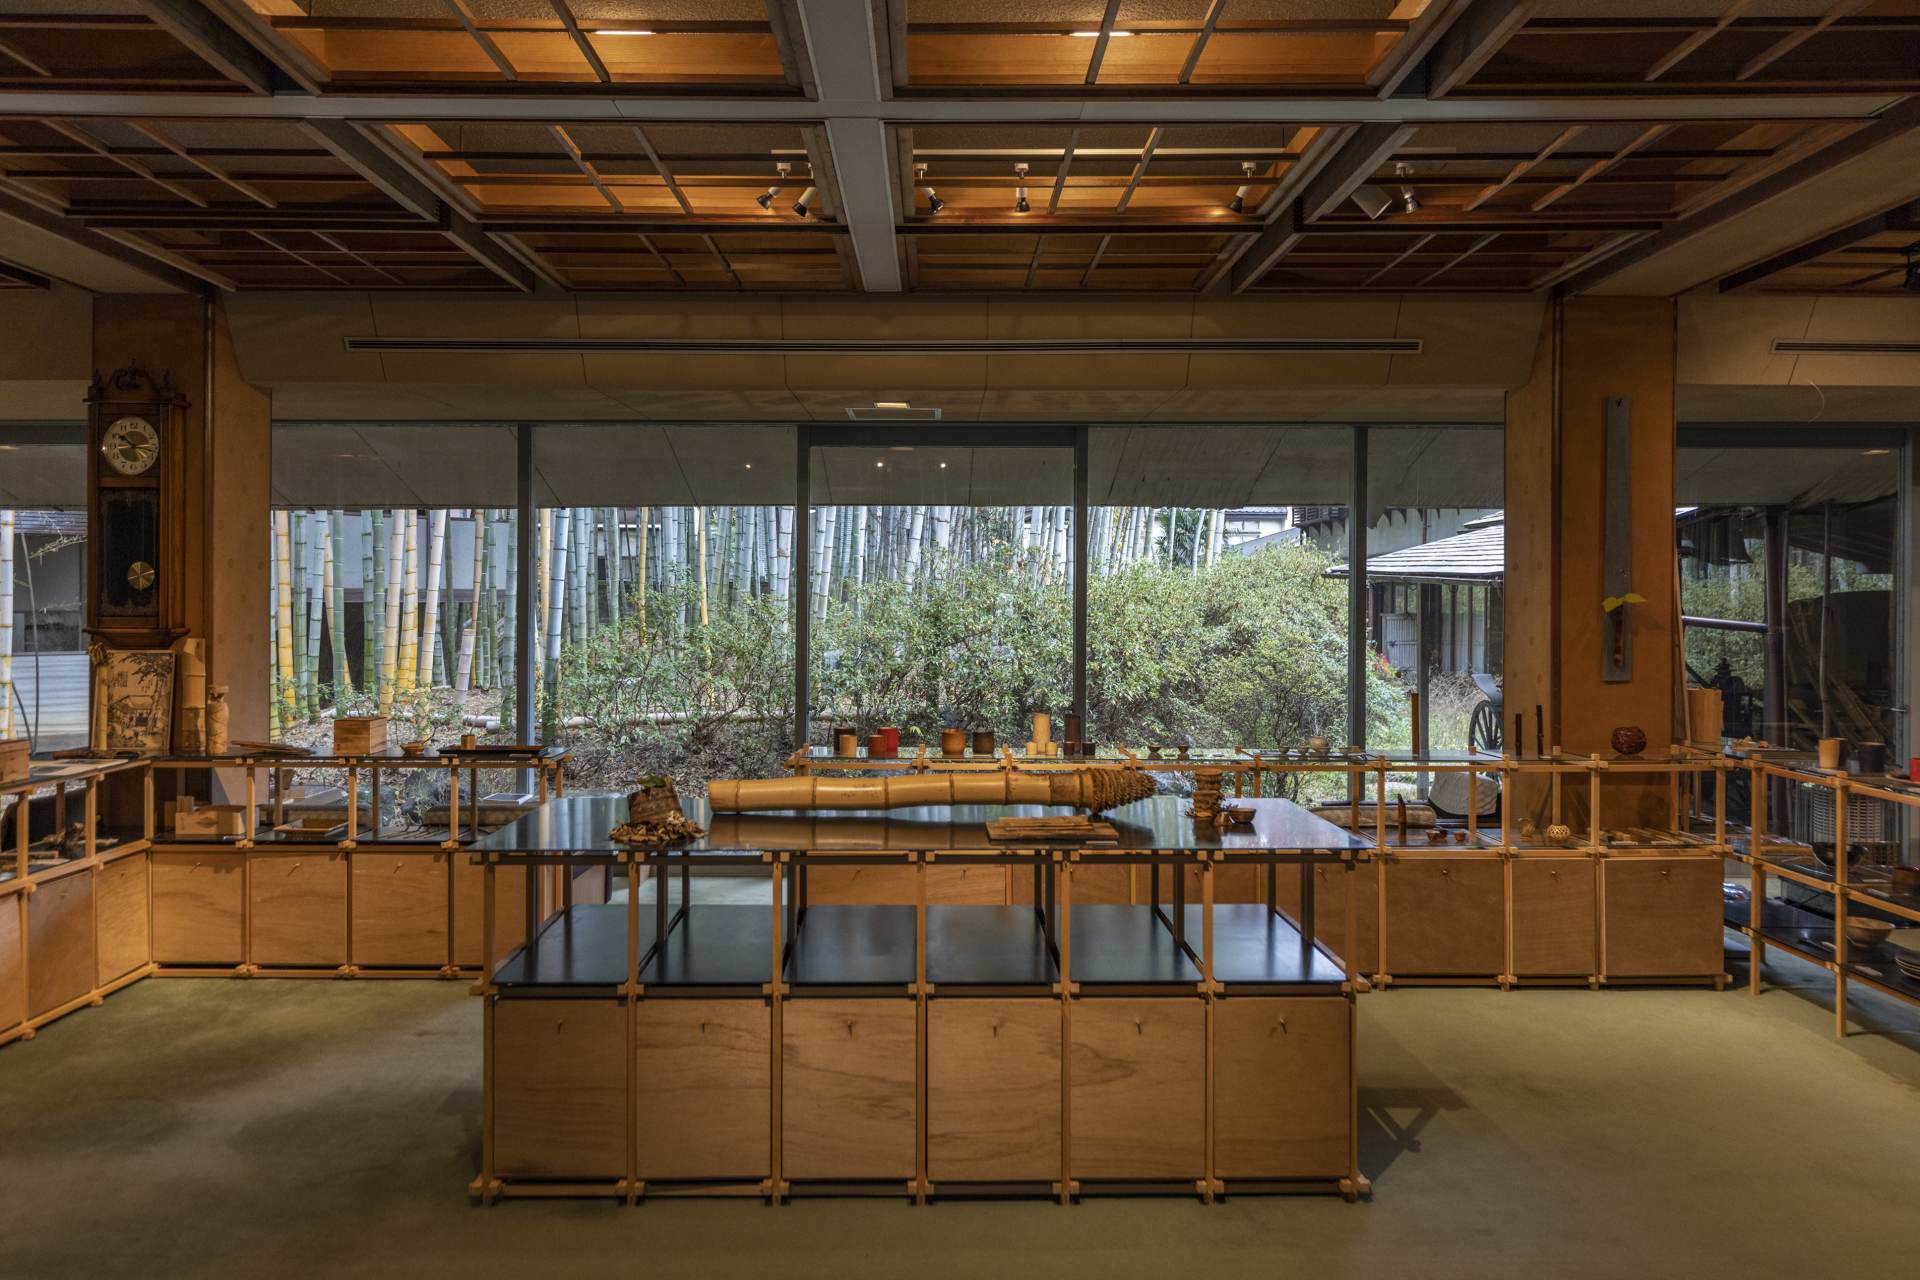 竹生園の内装は、竹材の自然な温かみを感じさせる。